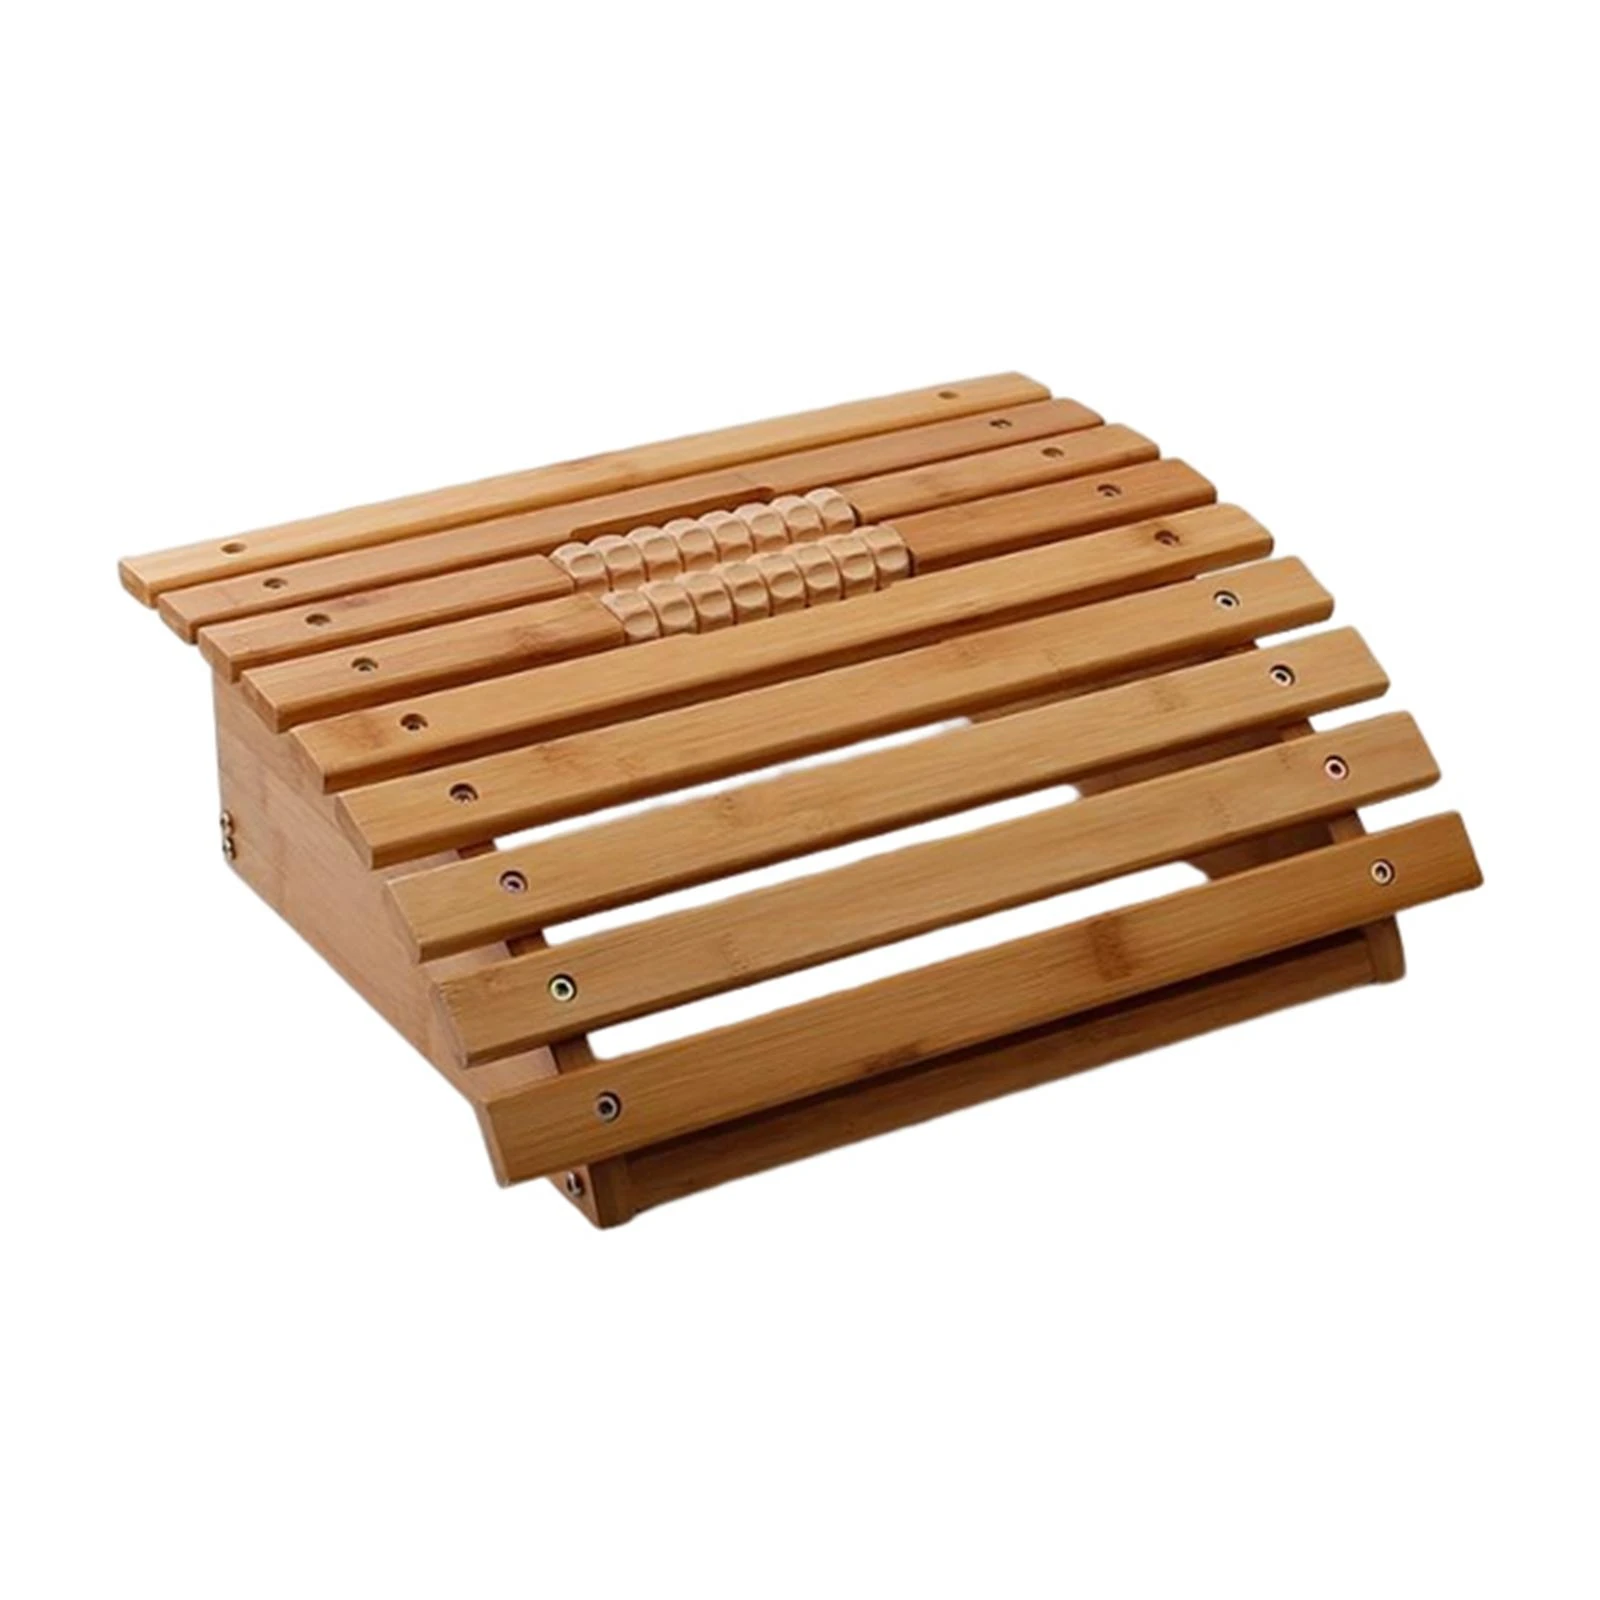 Podnóżek pod biurkiem masaż podnóżek podnóżek noga Relief bambus  antypoślizgowa podeszwa wałek do masażu relaks dla Office Home| | -  AliExpress